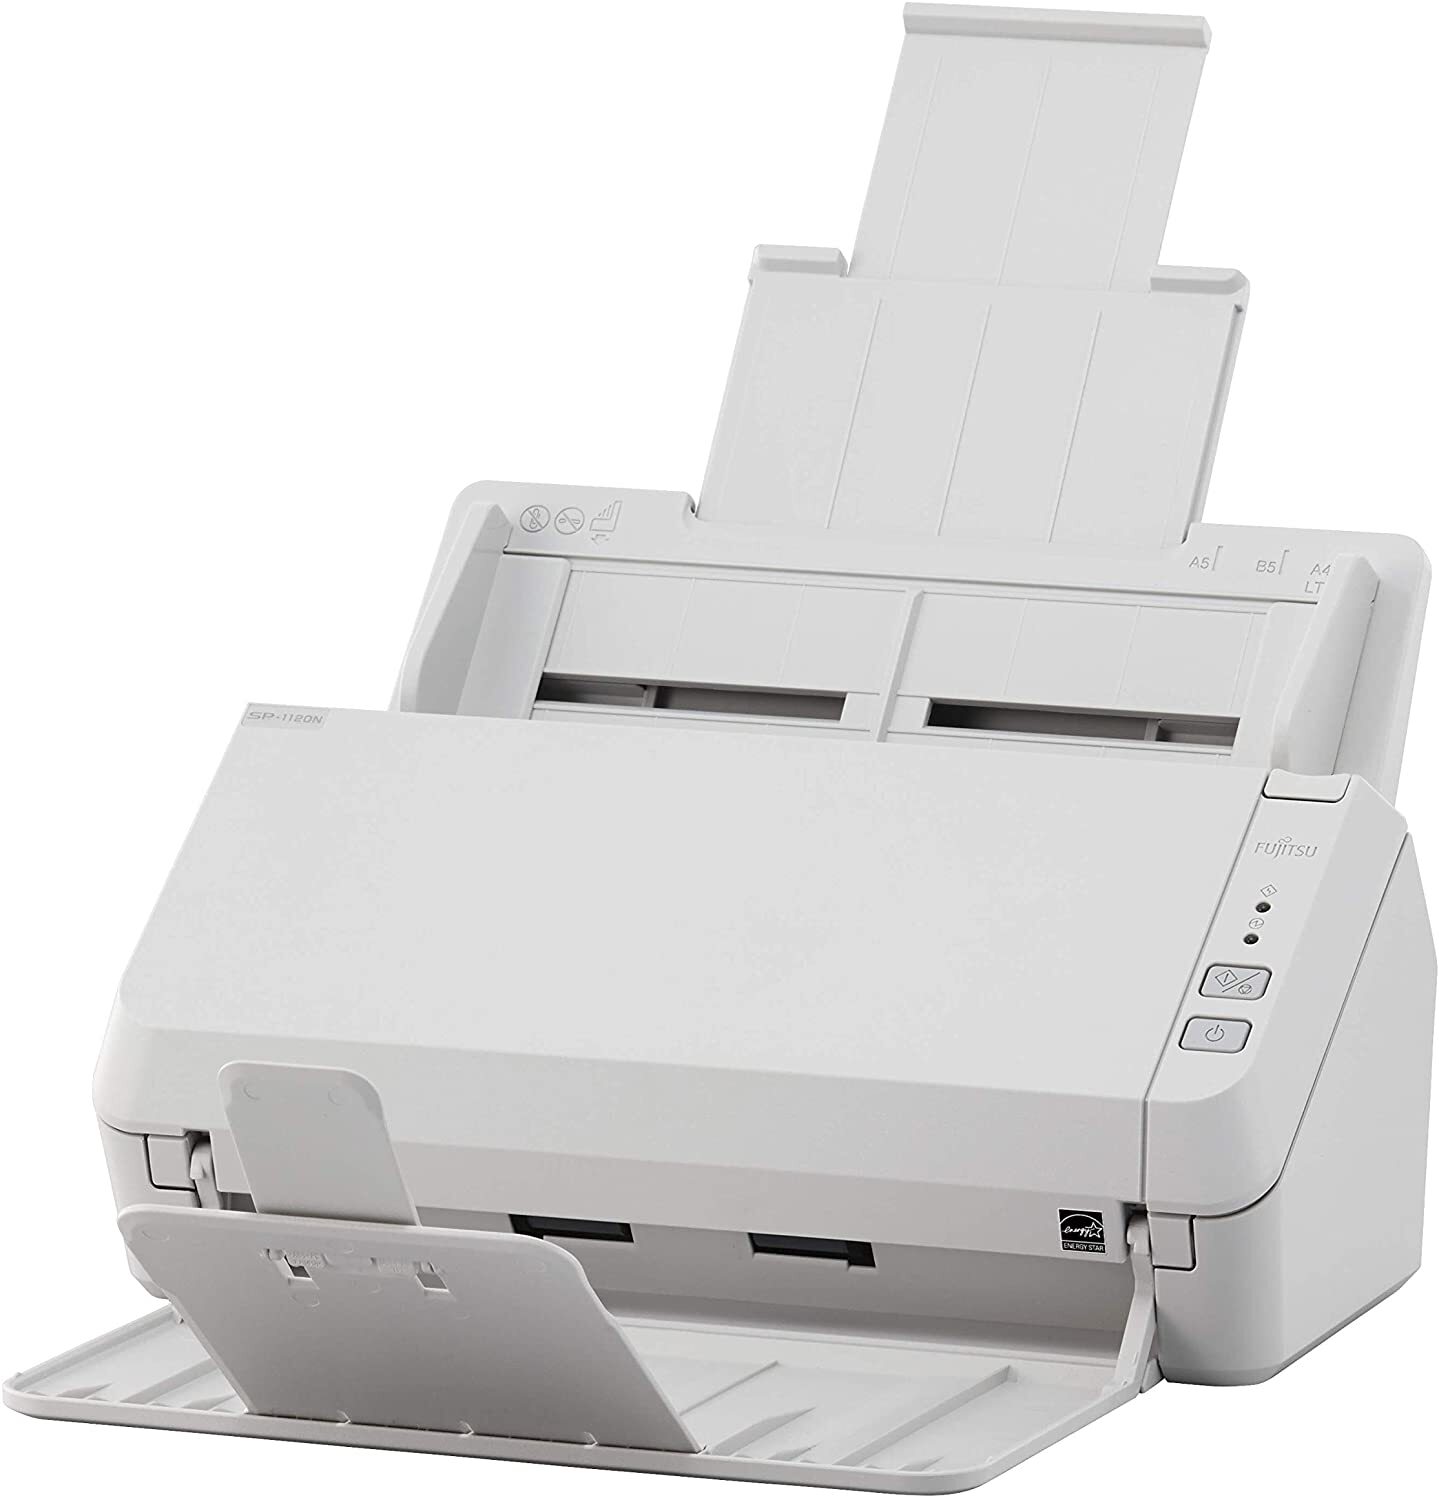  Документ-сканер A4 Fujitsu SP-1130N (PA03811-B021) фото